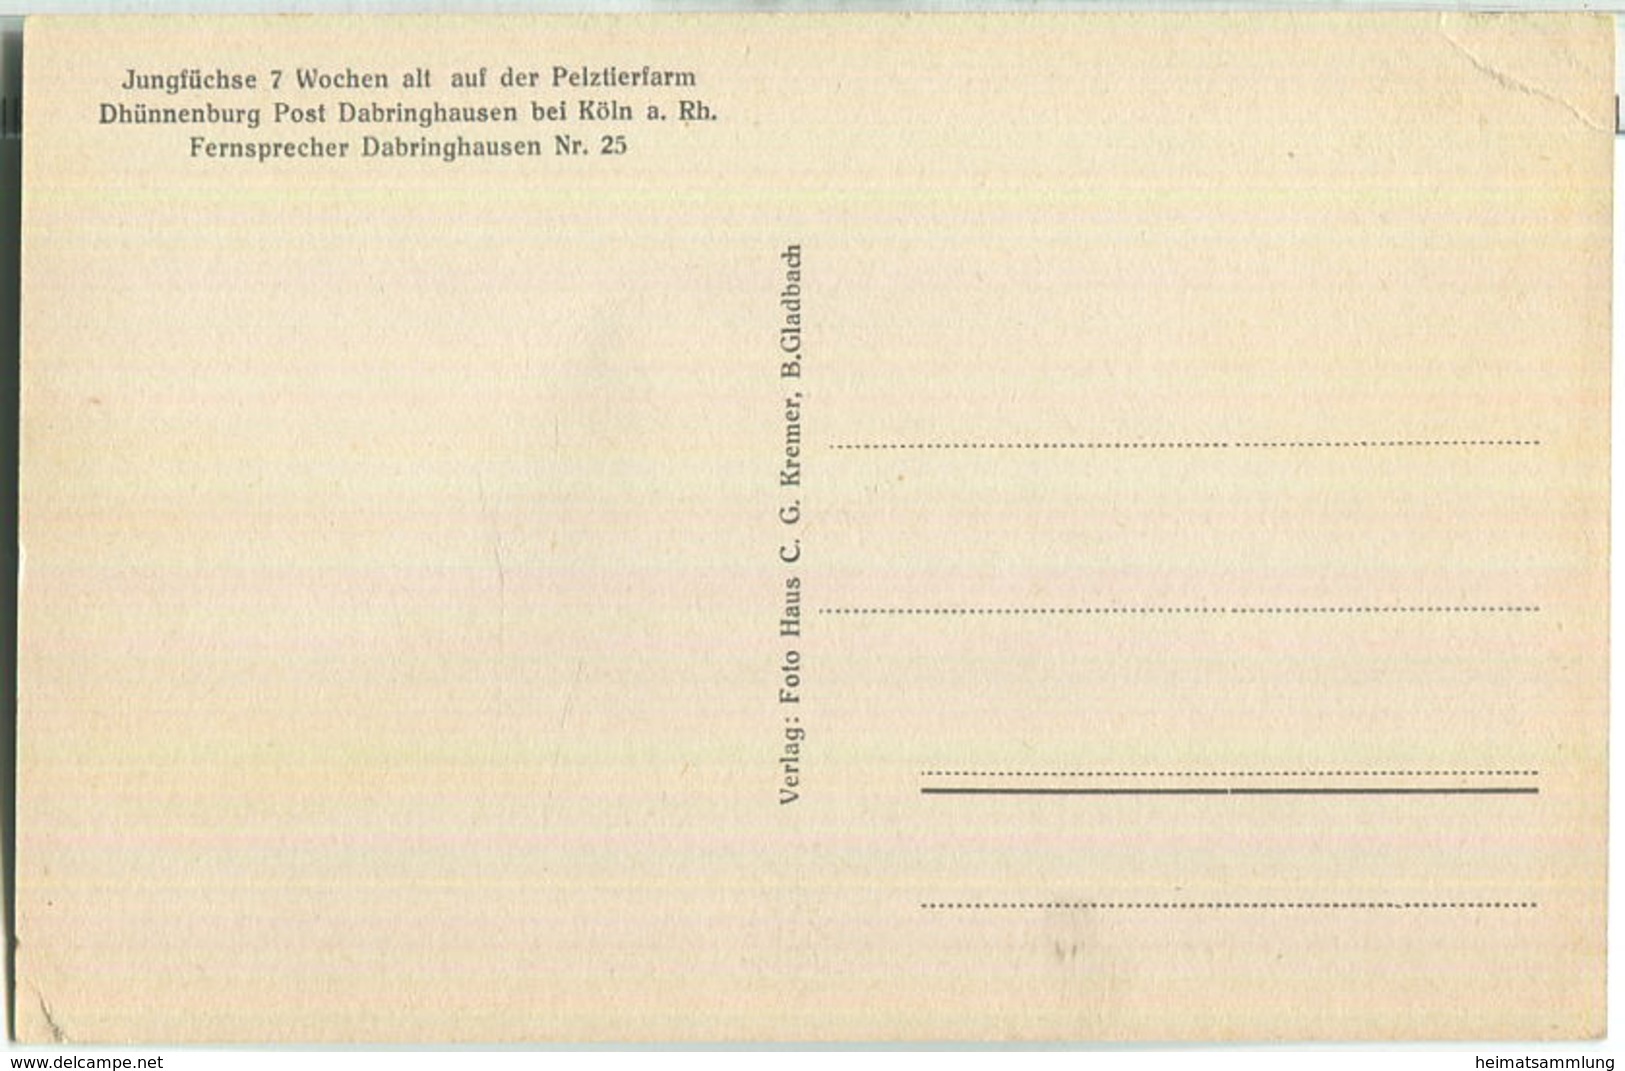 Jungfüchse 7 Wochen Alt - Pelztierfarm Dhünnenburg Dabringhausen Bei Köln - Verlag C. G. Kremer B. Gladbach - Wermelskirchen